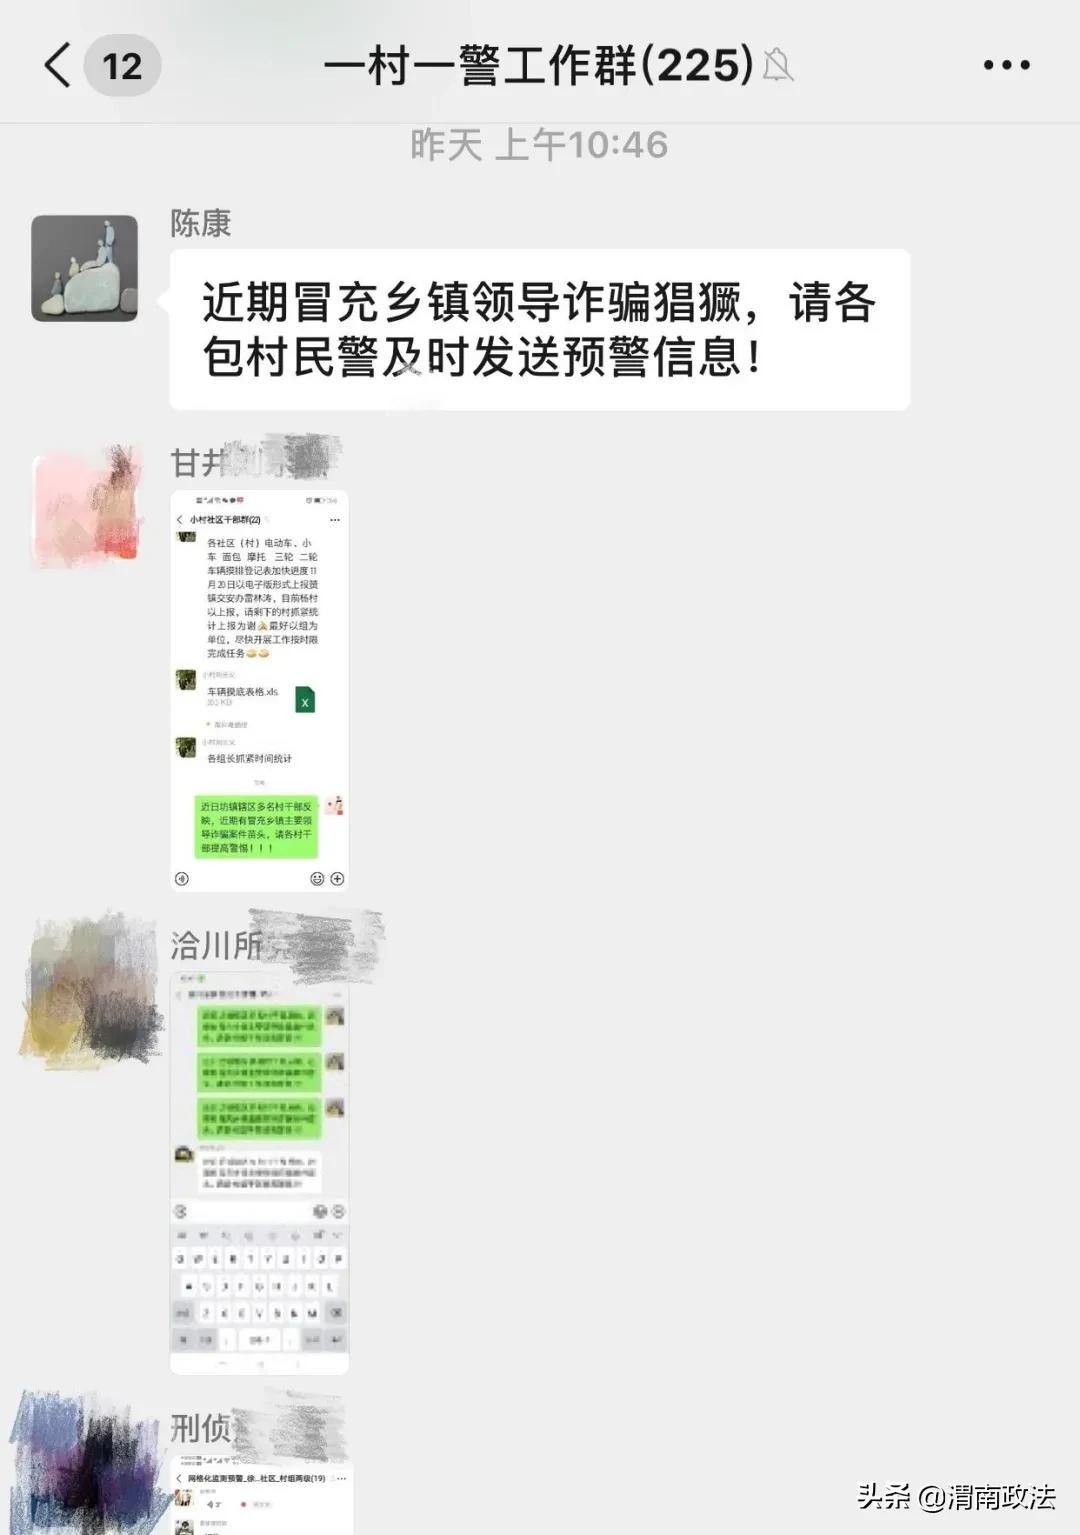 合阳县公安局全力营造防诈反诈浓厚氛围